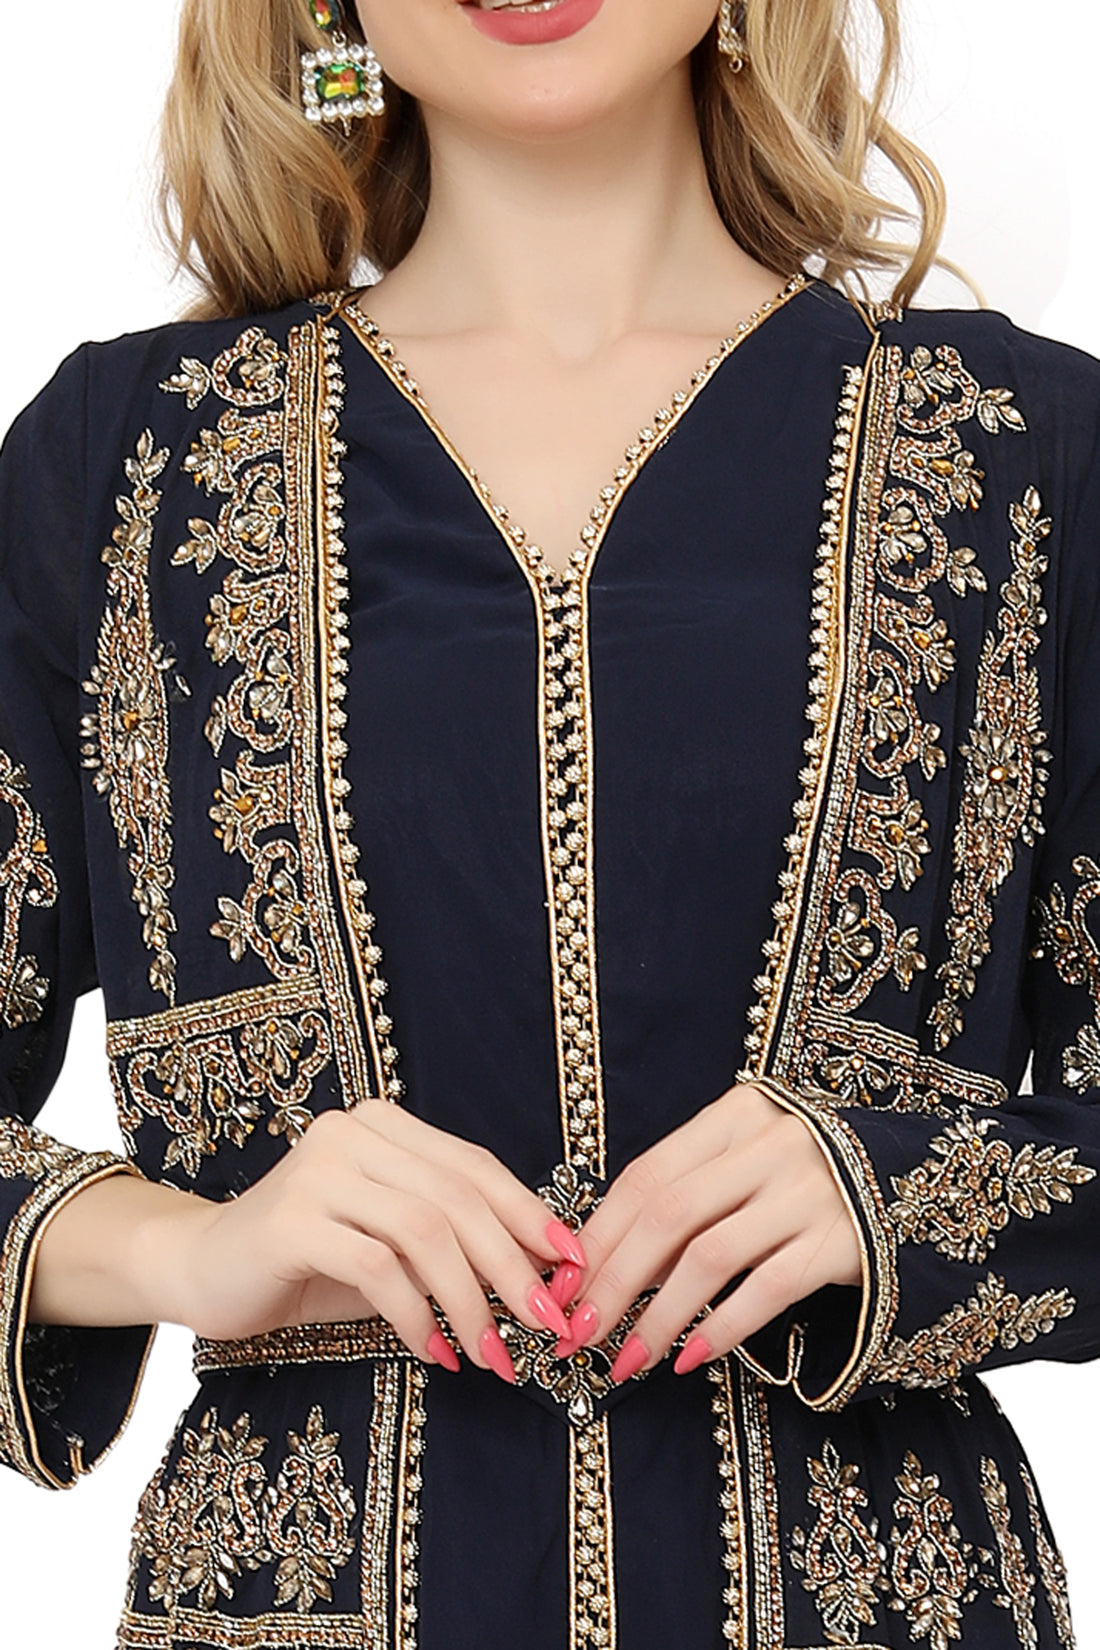 Buy Ethnic Wear Online For Women | Custom Hand Embroidered Kaftans ...